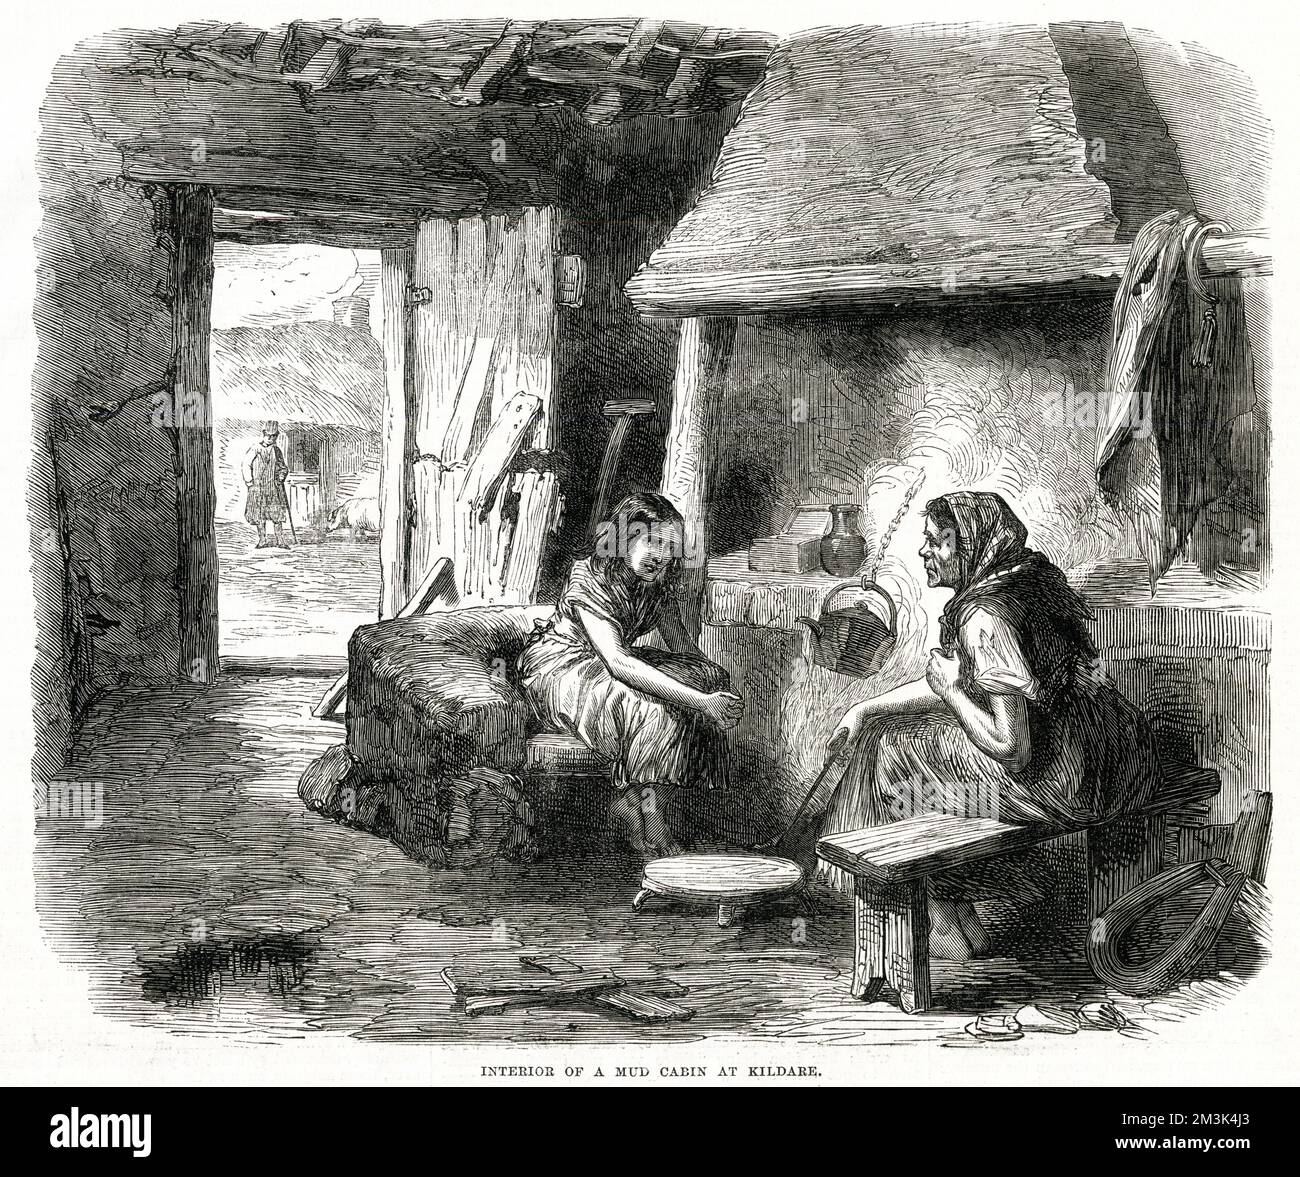 Eine Frau und ein junges Mädchen in einer Schlammhütte in Kildare. Sie sitzen neben dem Feuer, über dem ein Wasserkocher an einer Kette hängt. Das ist ein armseliges Ramschlager, in dem die Tür fast auseinander fällt und ein Mann und ein Schwein draußen zu sehen sind. Datum: 1870 Stockfoto